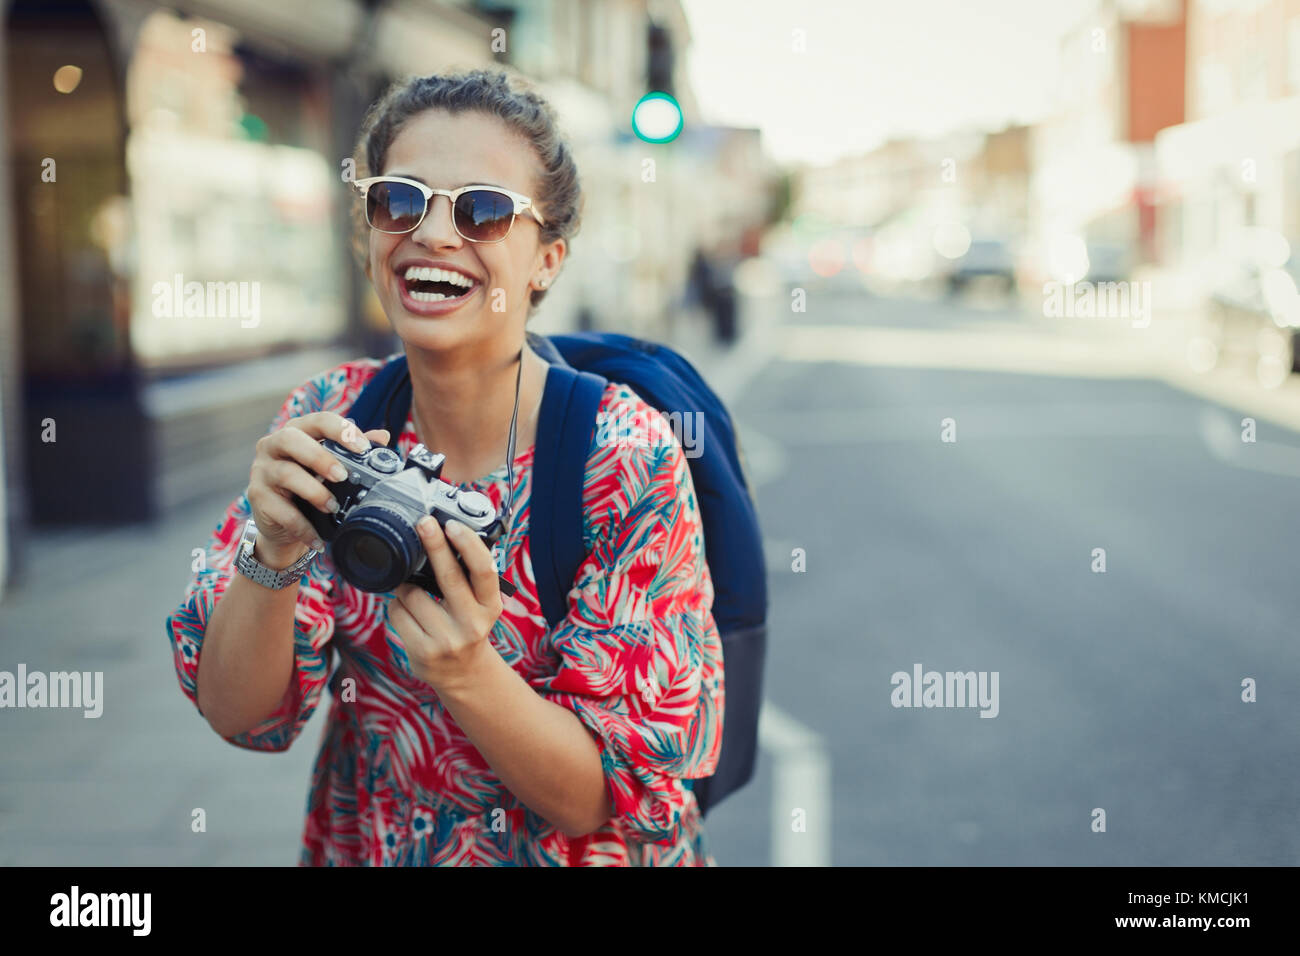 Portrait riant, enthousiaste jeune touriste femelle dans des lunettes de soleil photographie avec un appareil photo dans la rue urbaine Banque D'Images